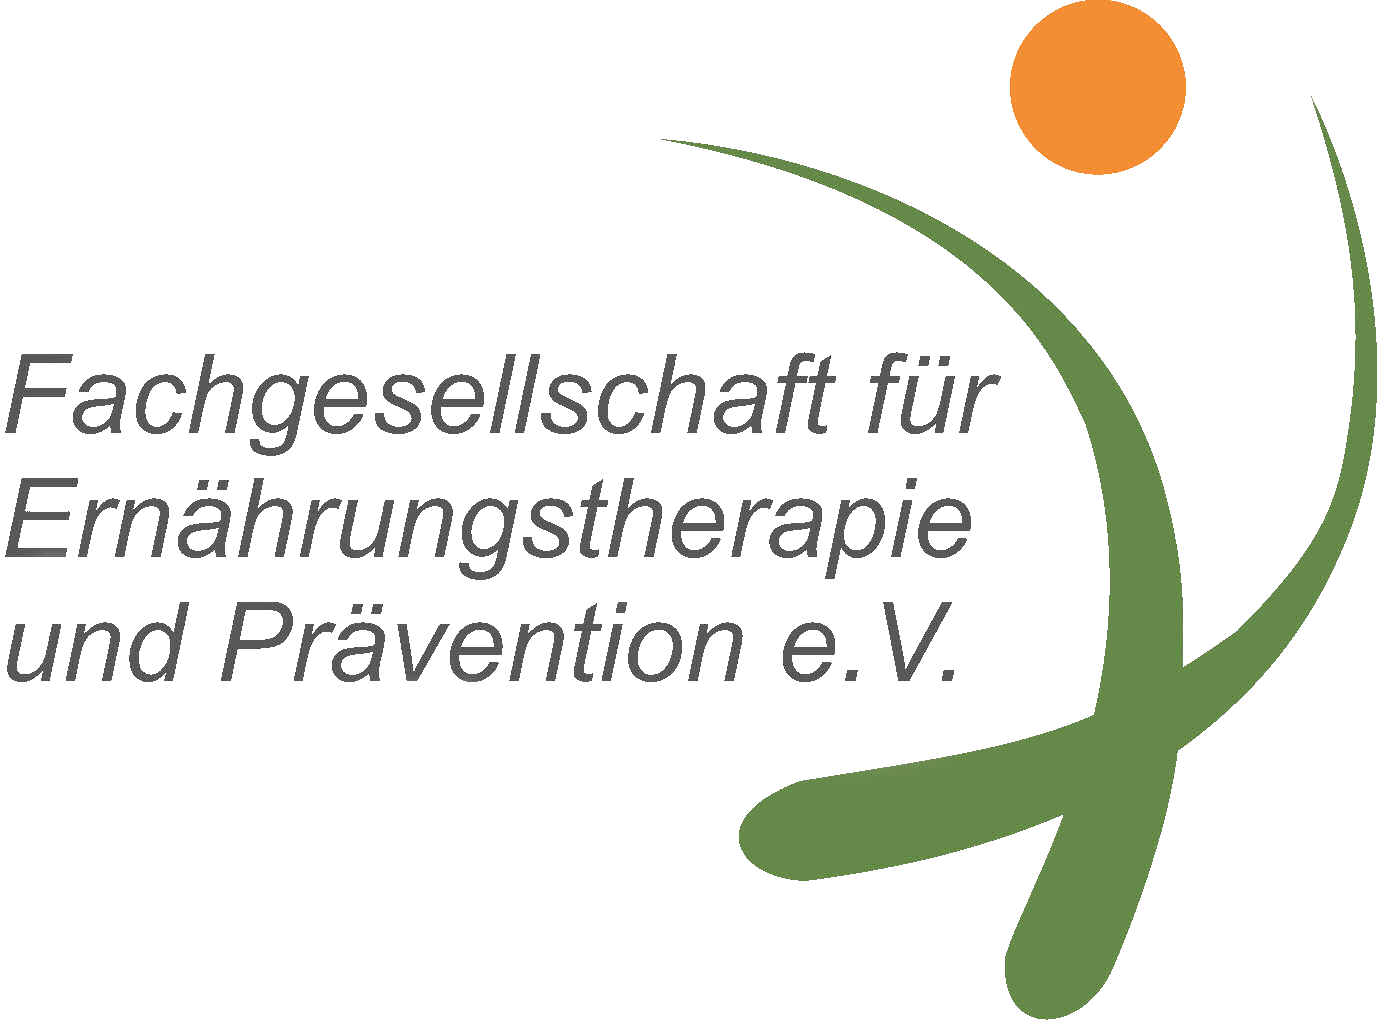 Onlinekurs-ernaehrung.de ist Mitglied bei der Fachgesellschaft für Ernährungstherapie und Prävention e.V.